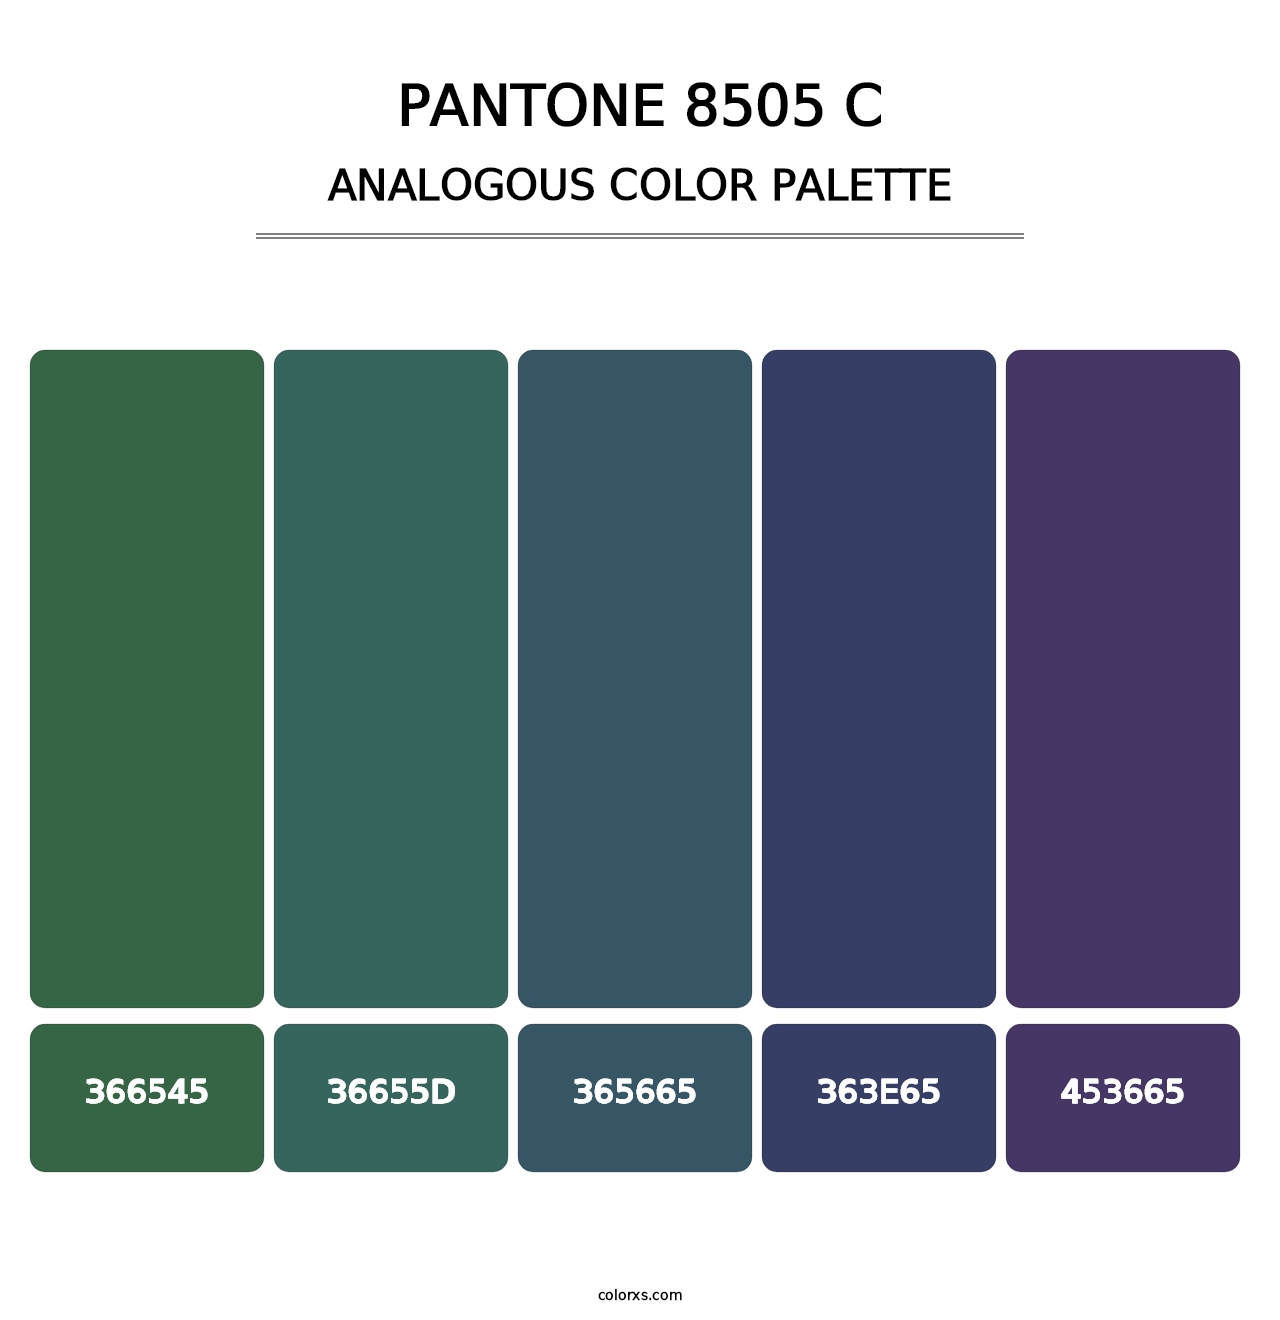 PANTONE 8505 C - Analogous Color Palette